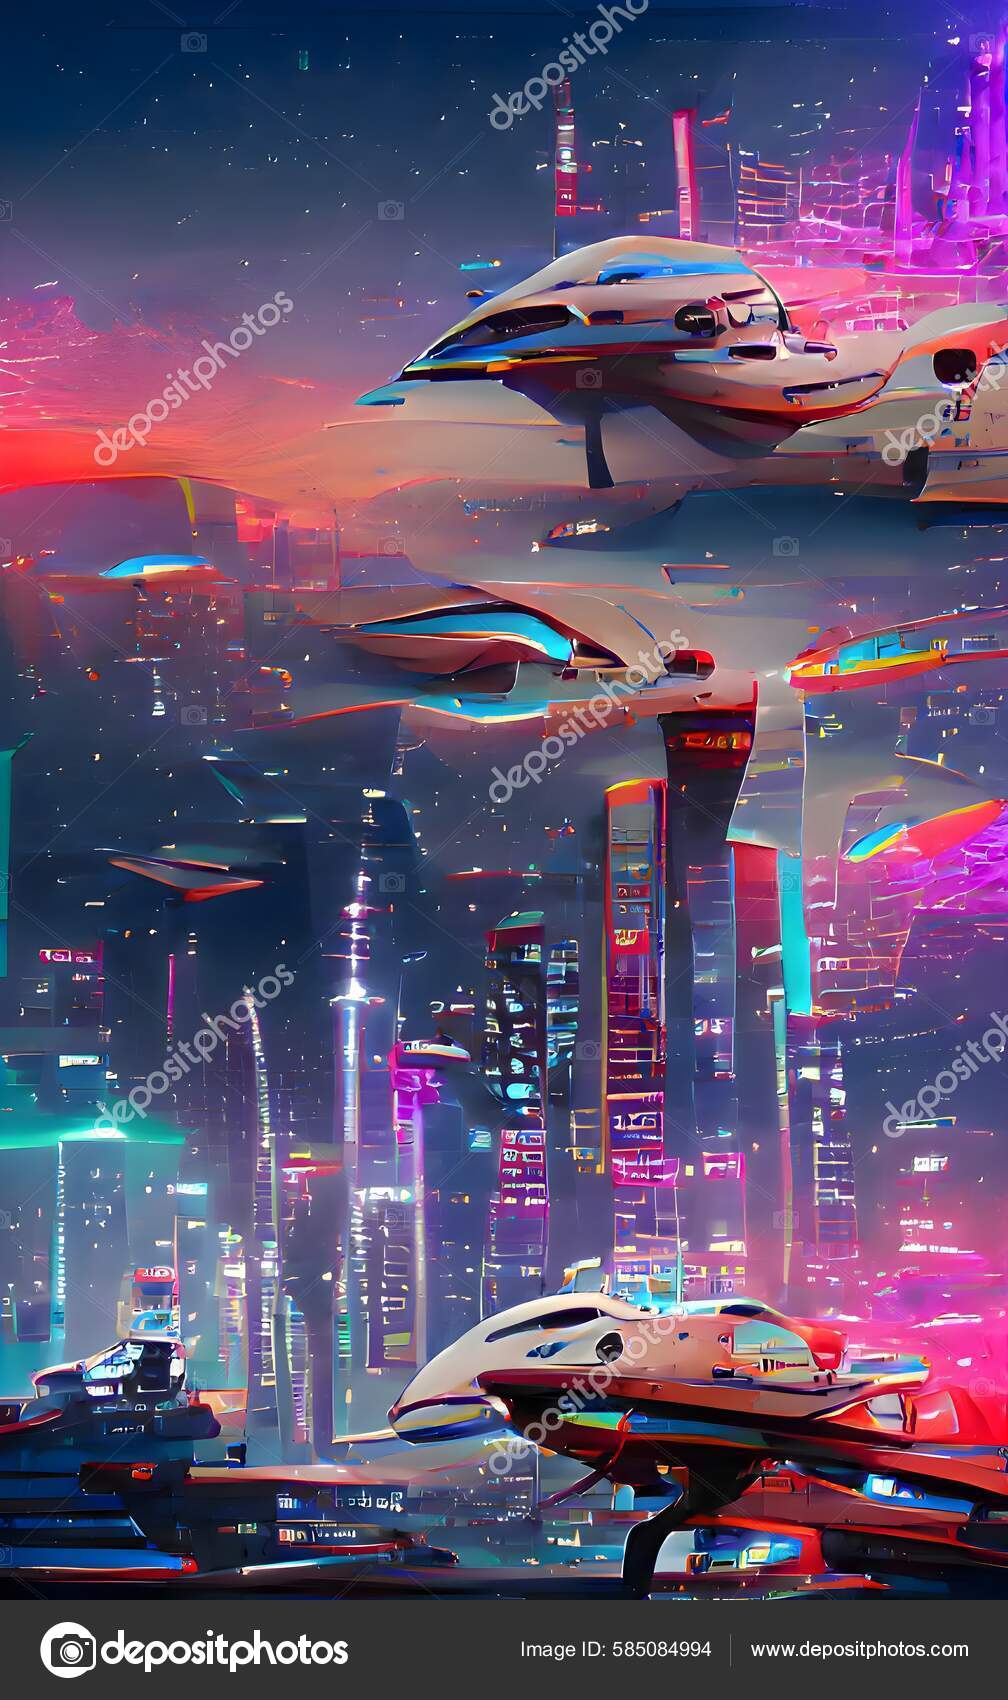 Cyberpunk industrial abstract future wallpaper conceito futurista noite  rosa paisagem urbana ilustração 3d